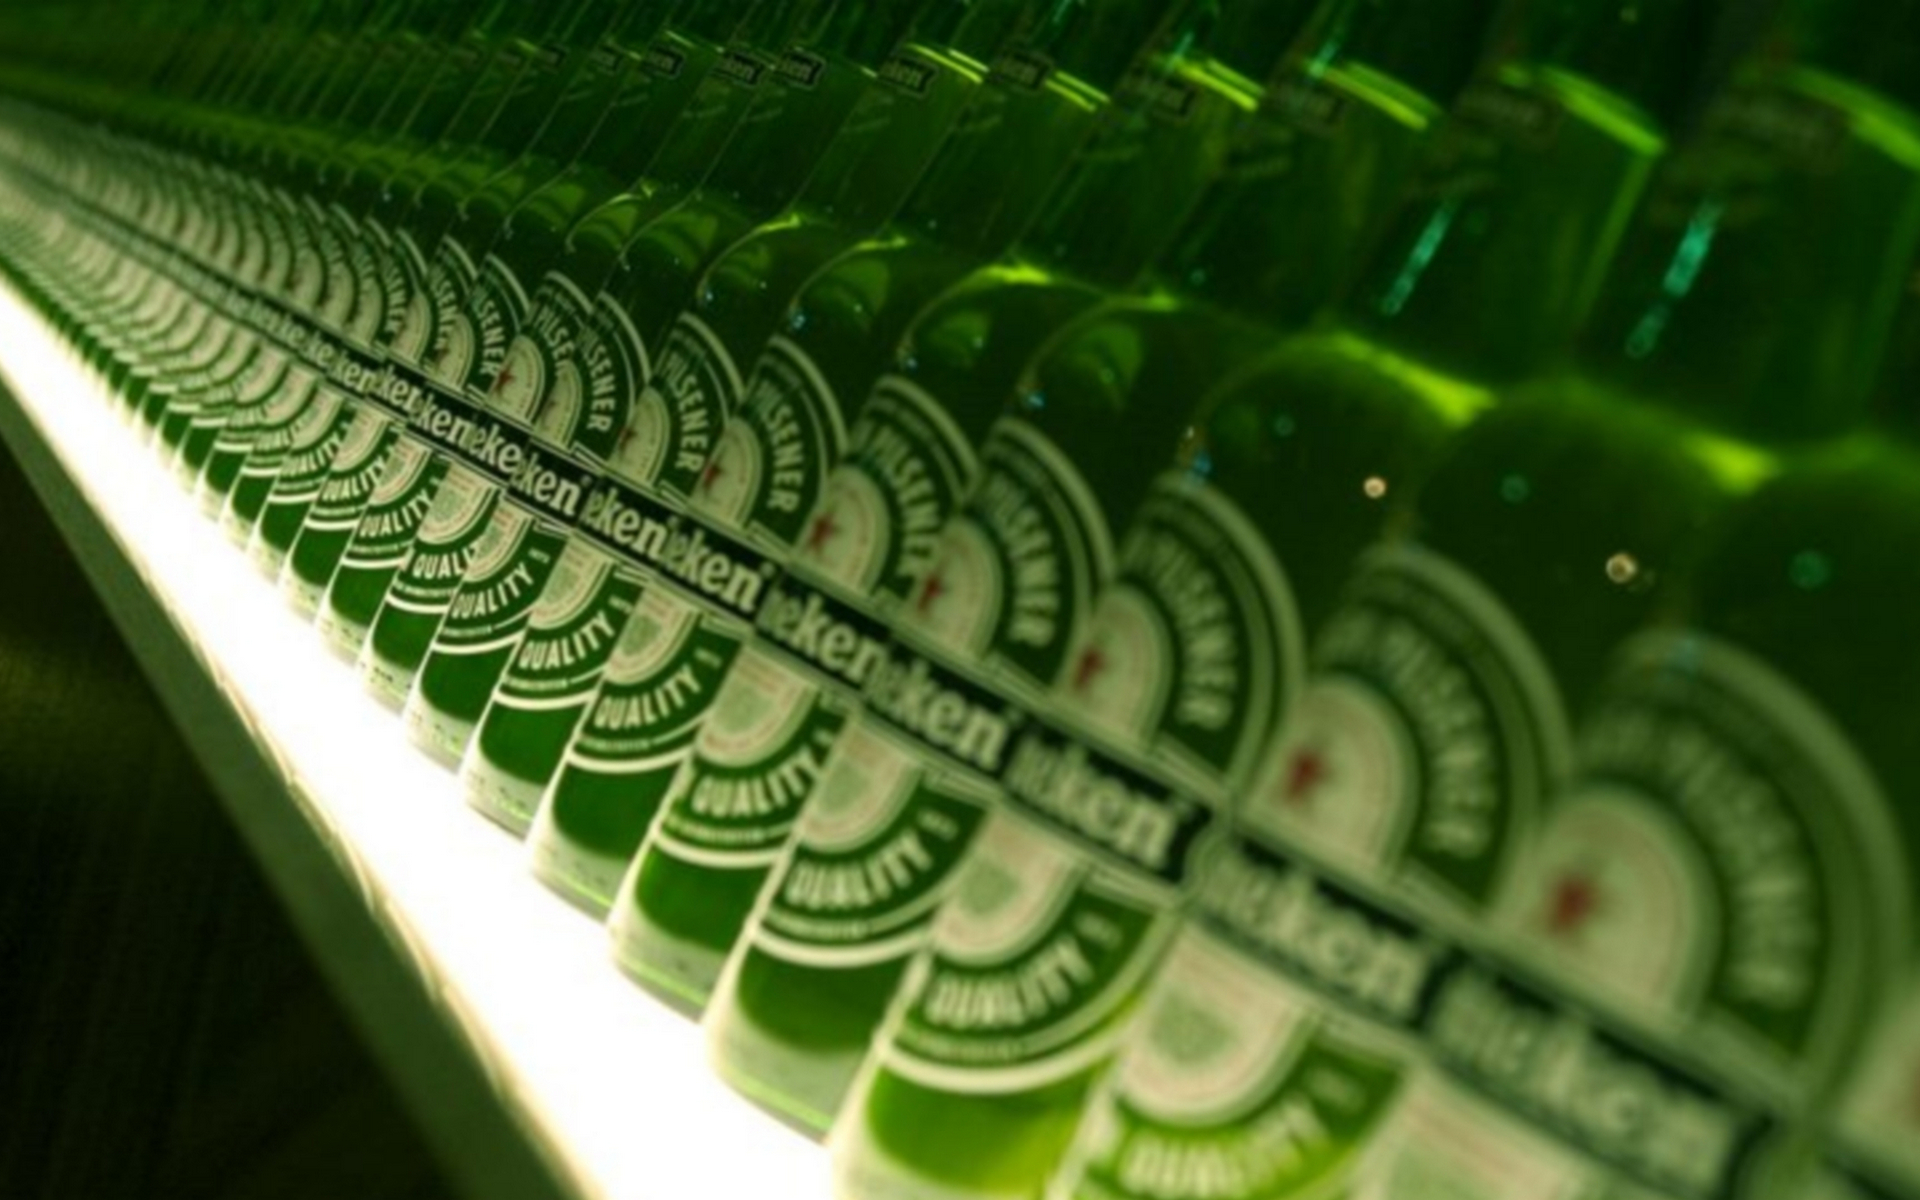 Wallpapers shelving bottles green on the desktop